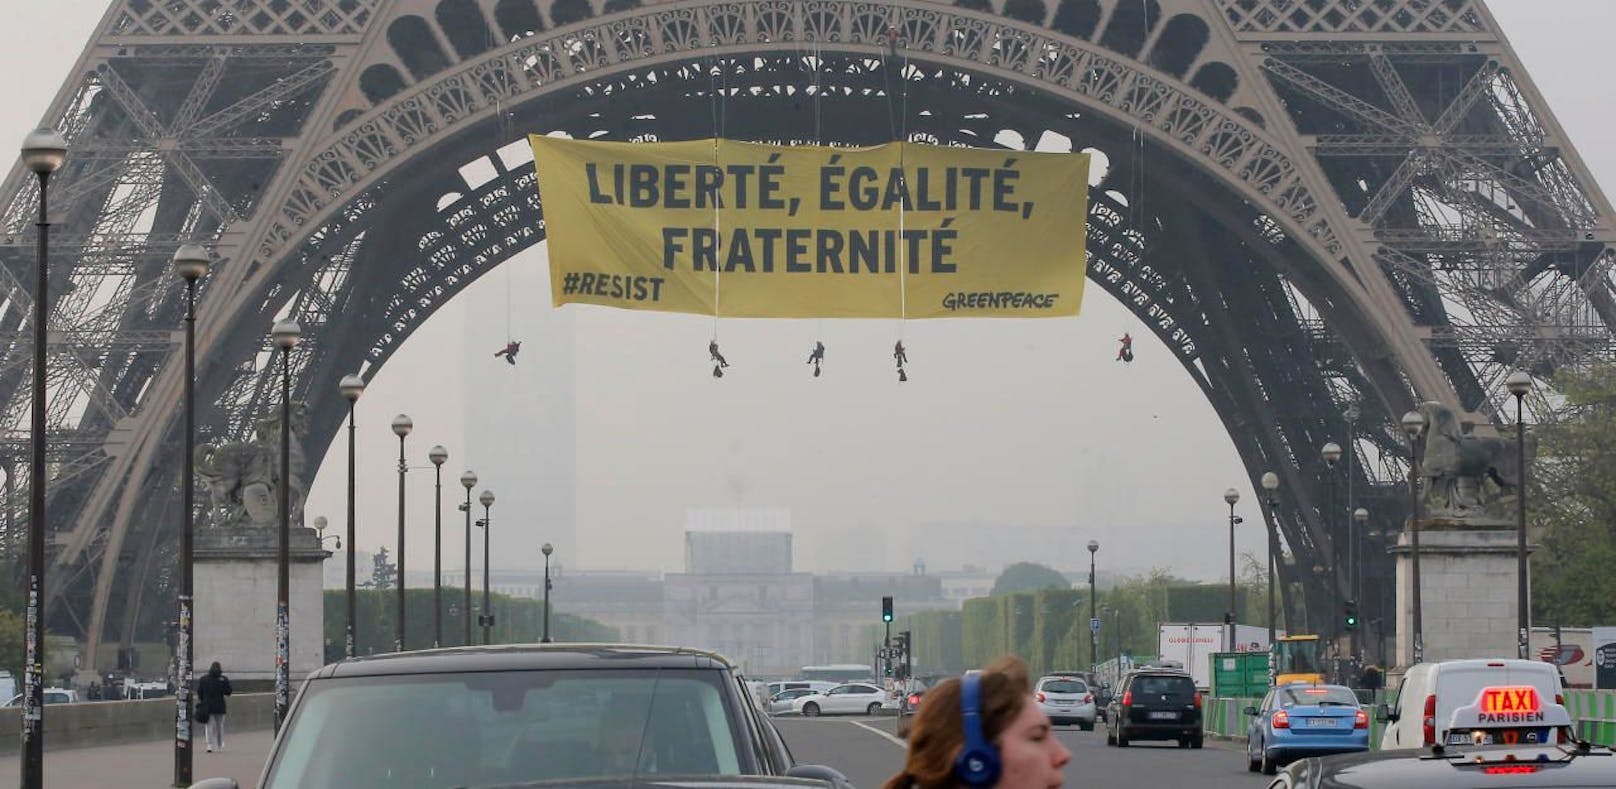 Riesiges Plakat gegen Le Pen am Eiffelturm